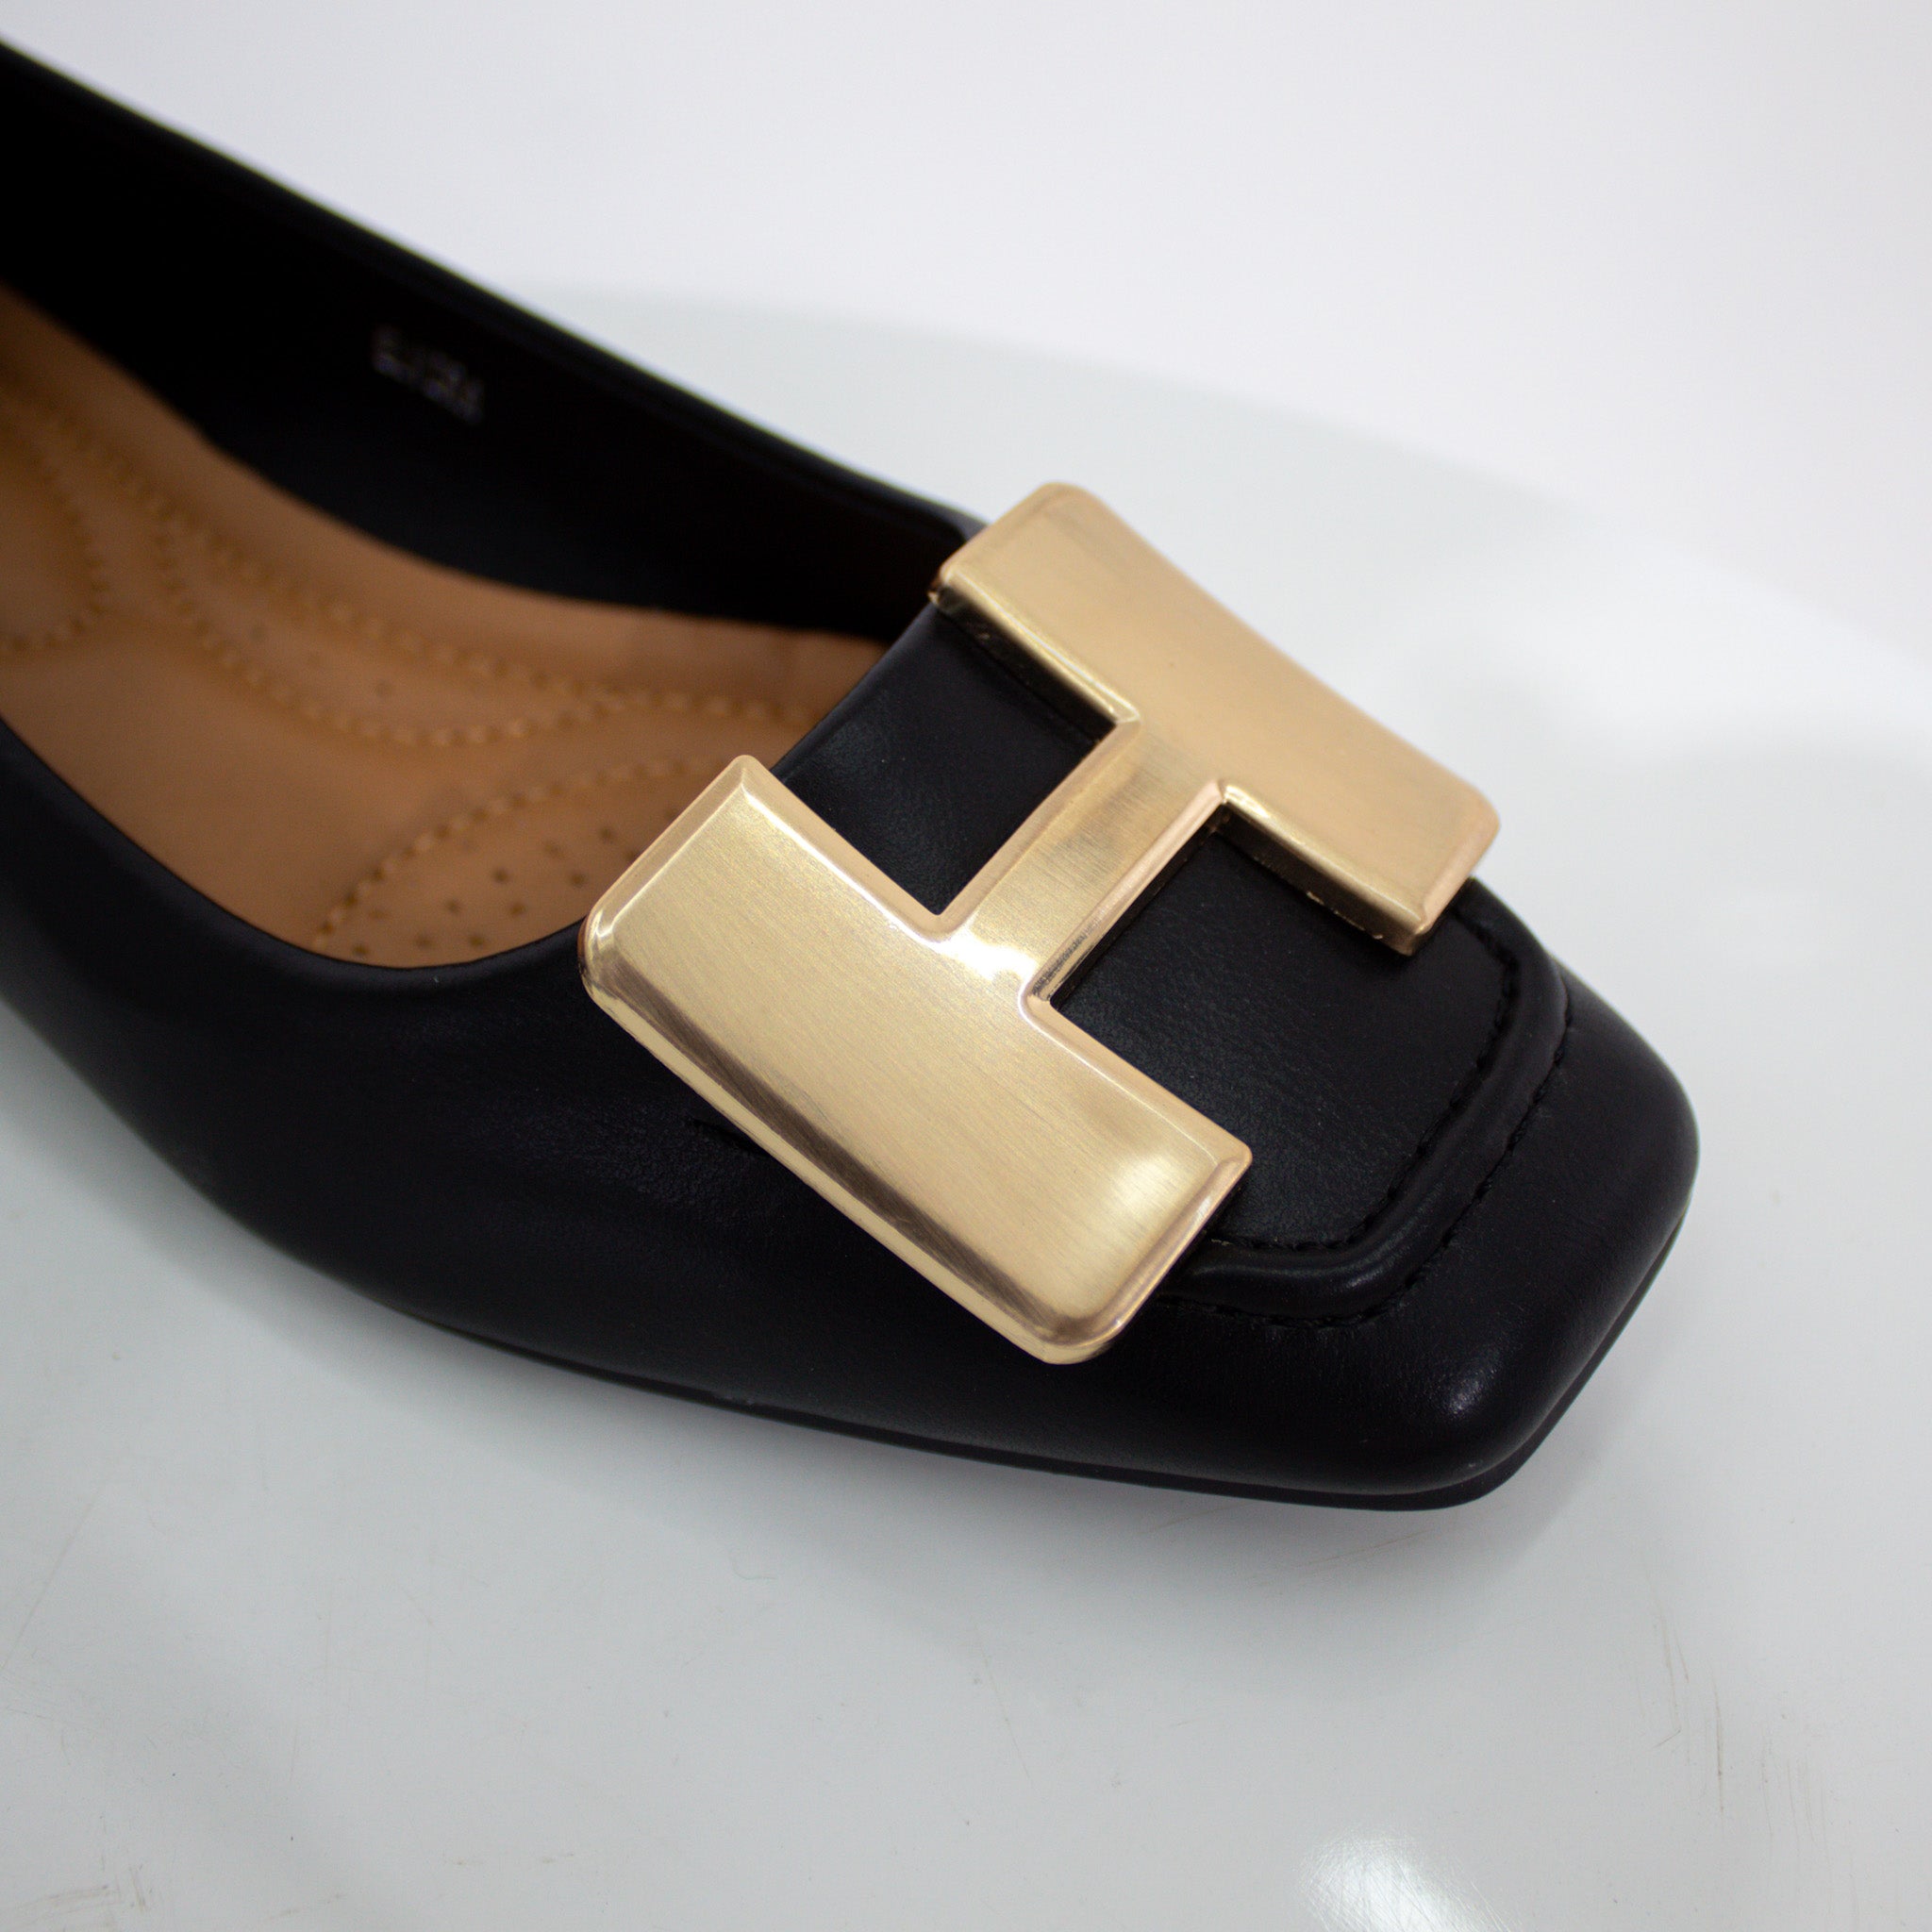 Alvira gold H-trim faux leather pump shoes black